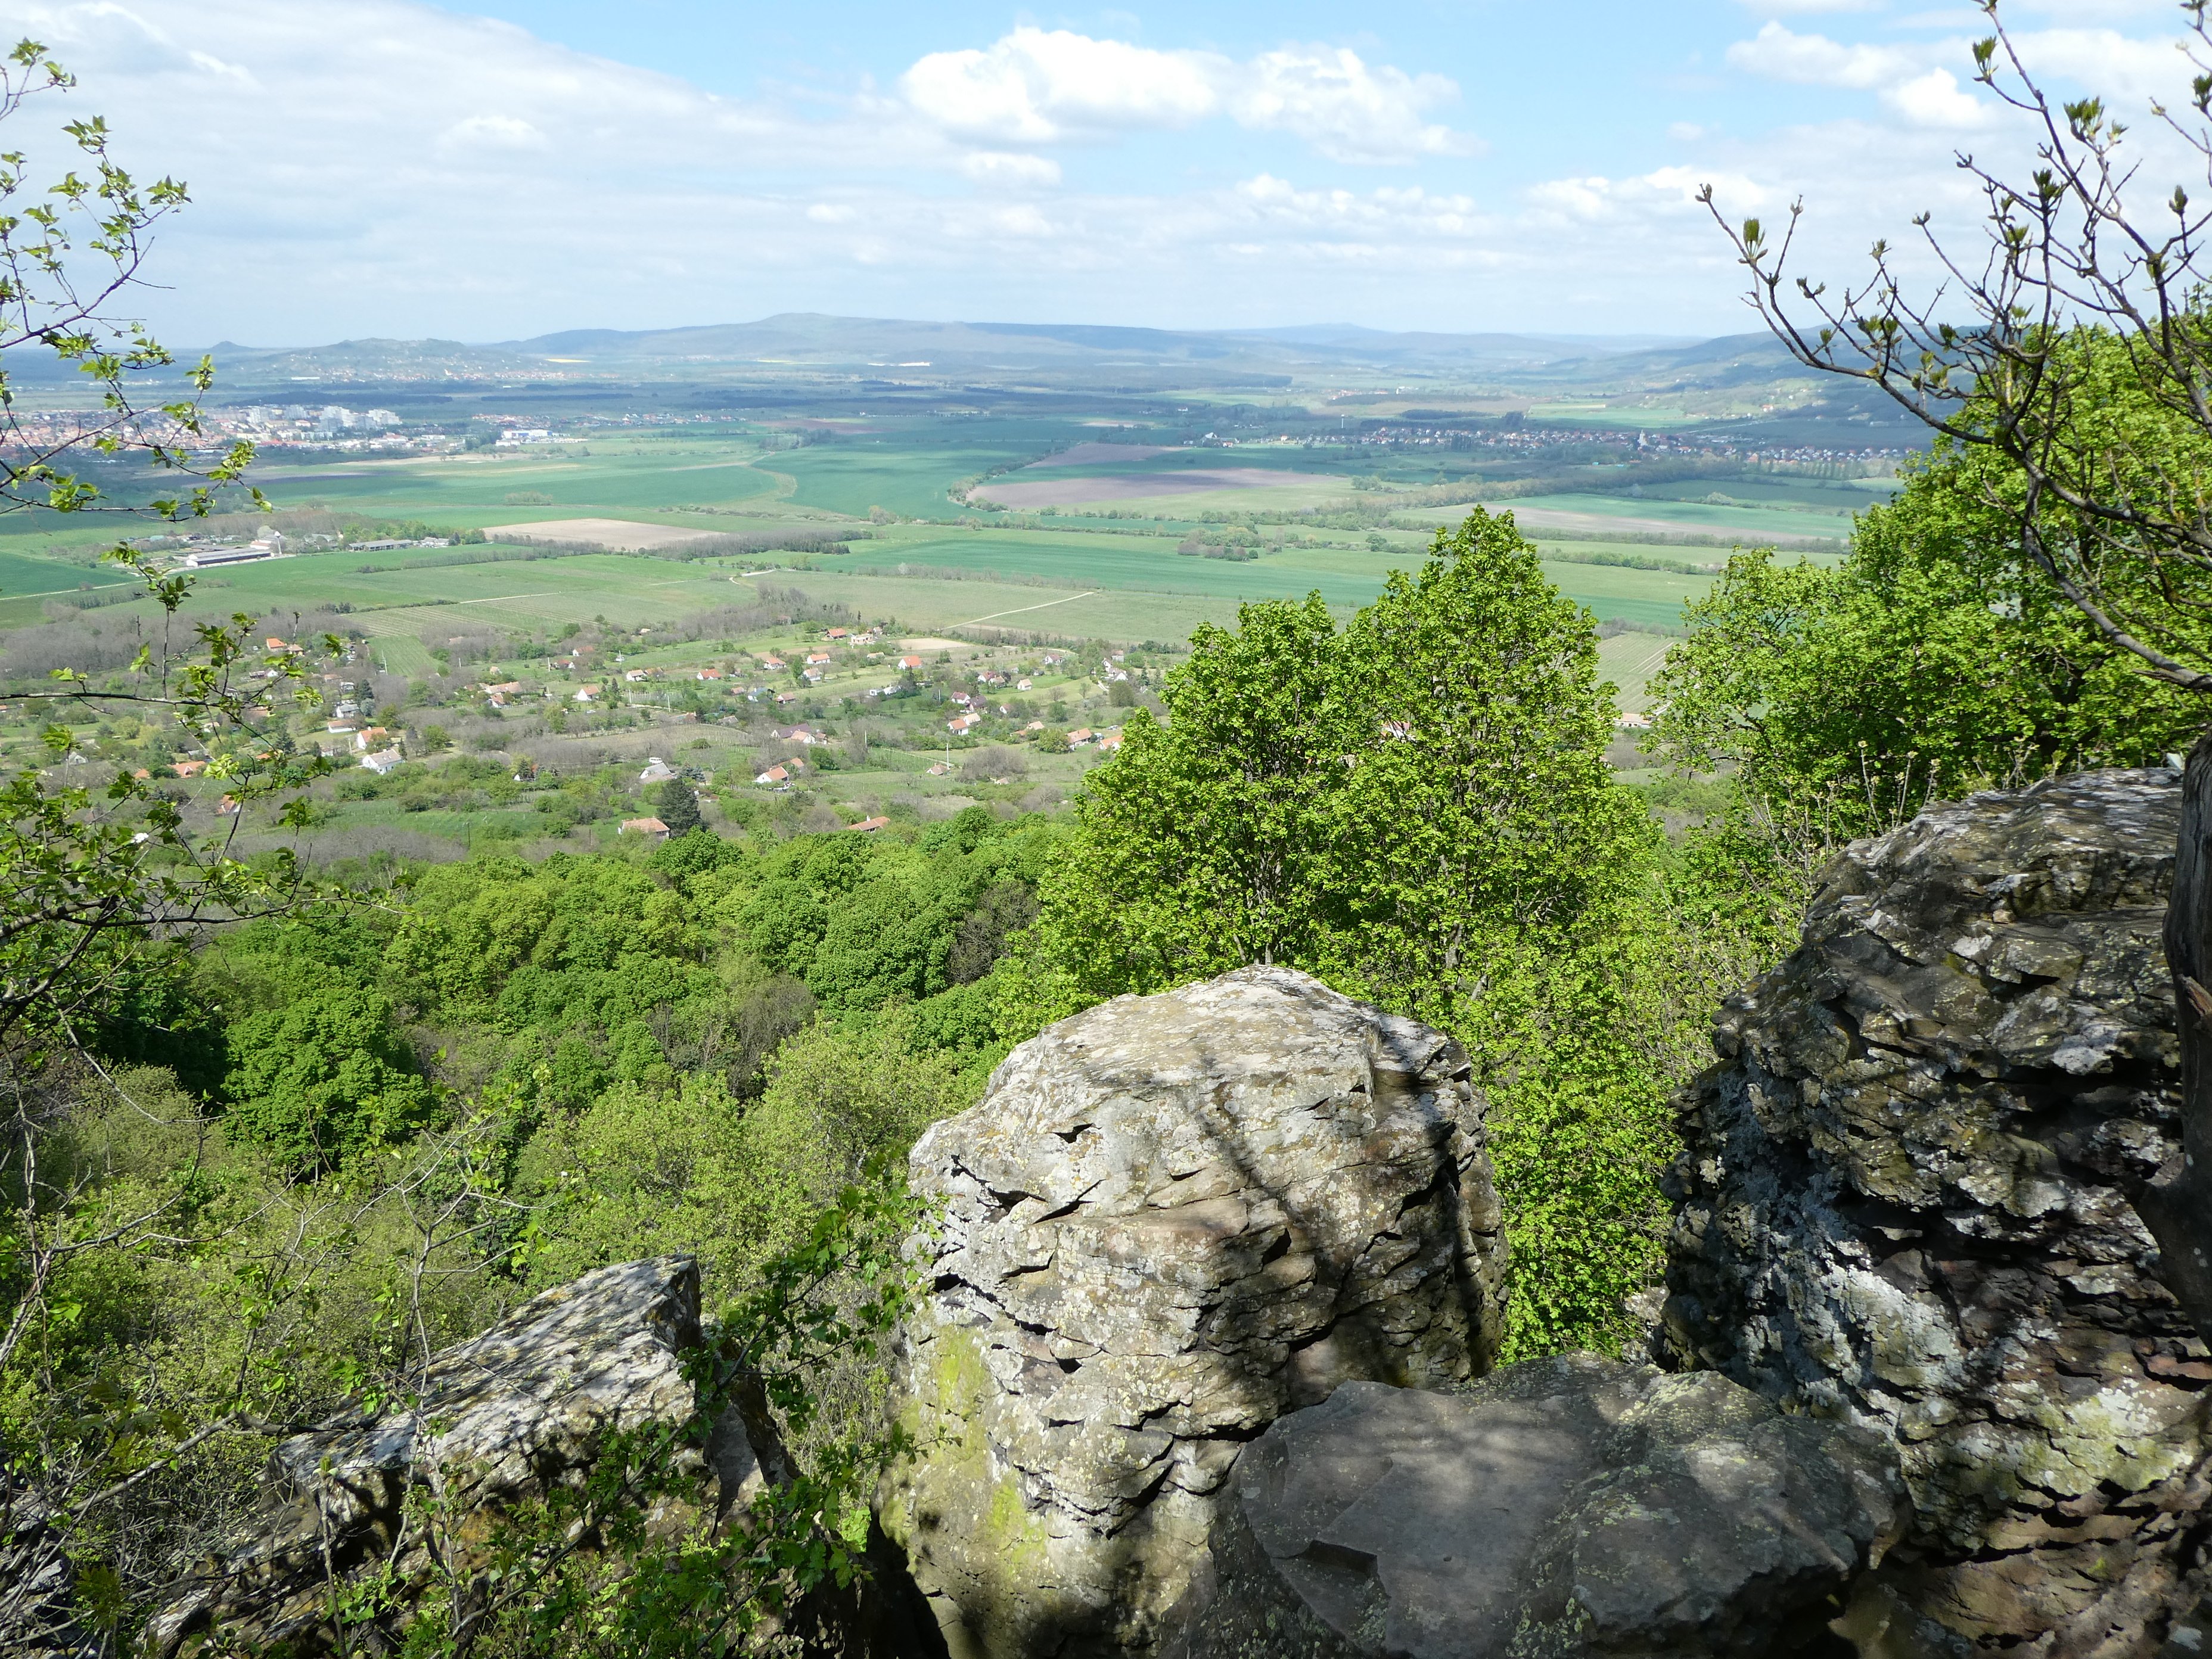 Kilátás a Szent-György-hegy bazaltorgonáiról a Tapolcai-medencére és a Keszthelyi-hegységre (Rippl-Rónai Múzeum CC BY-NC-ND)